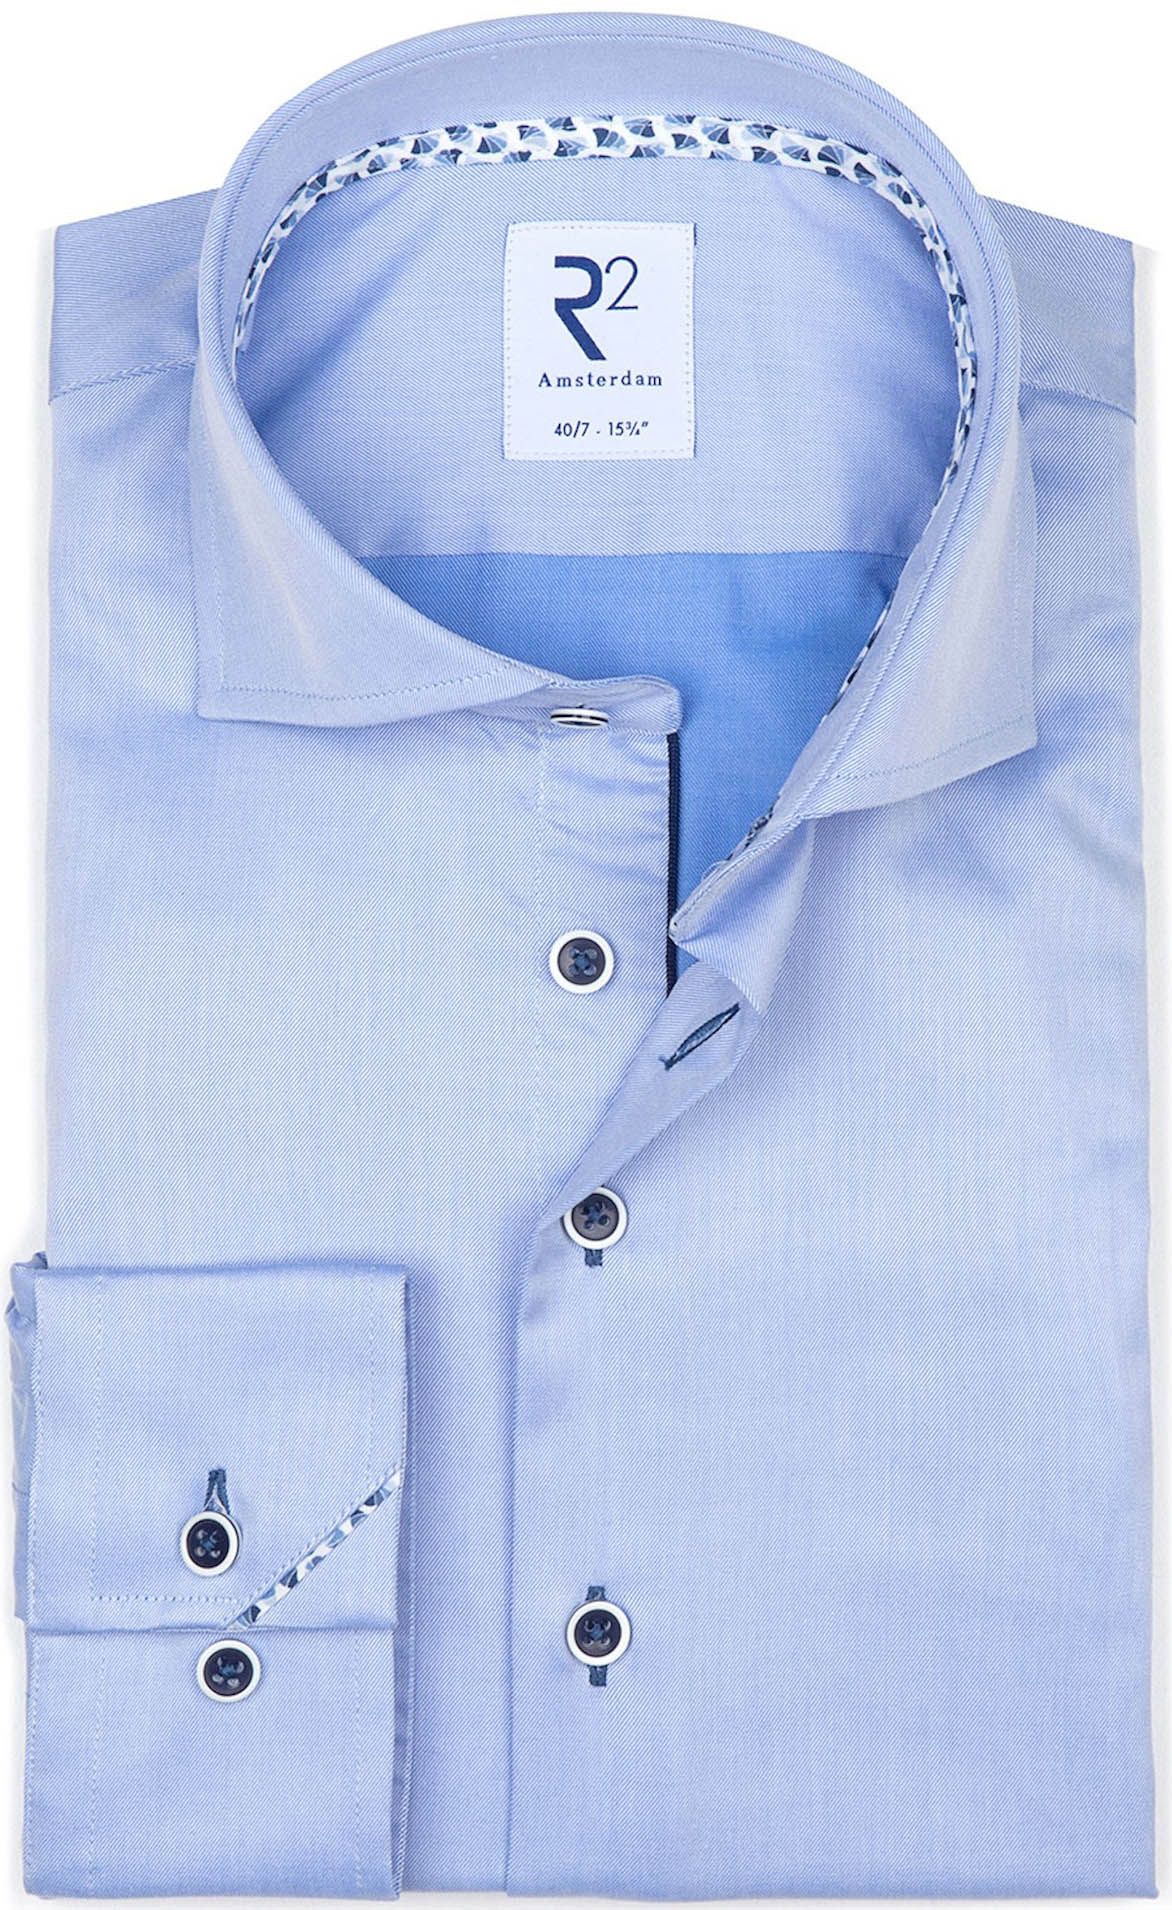 R2 Light Cotton Shirt XLS Blue size 15